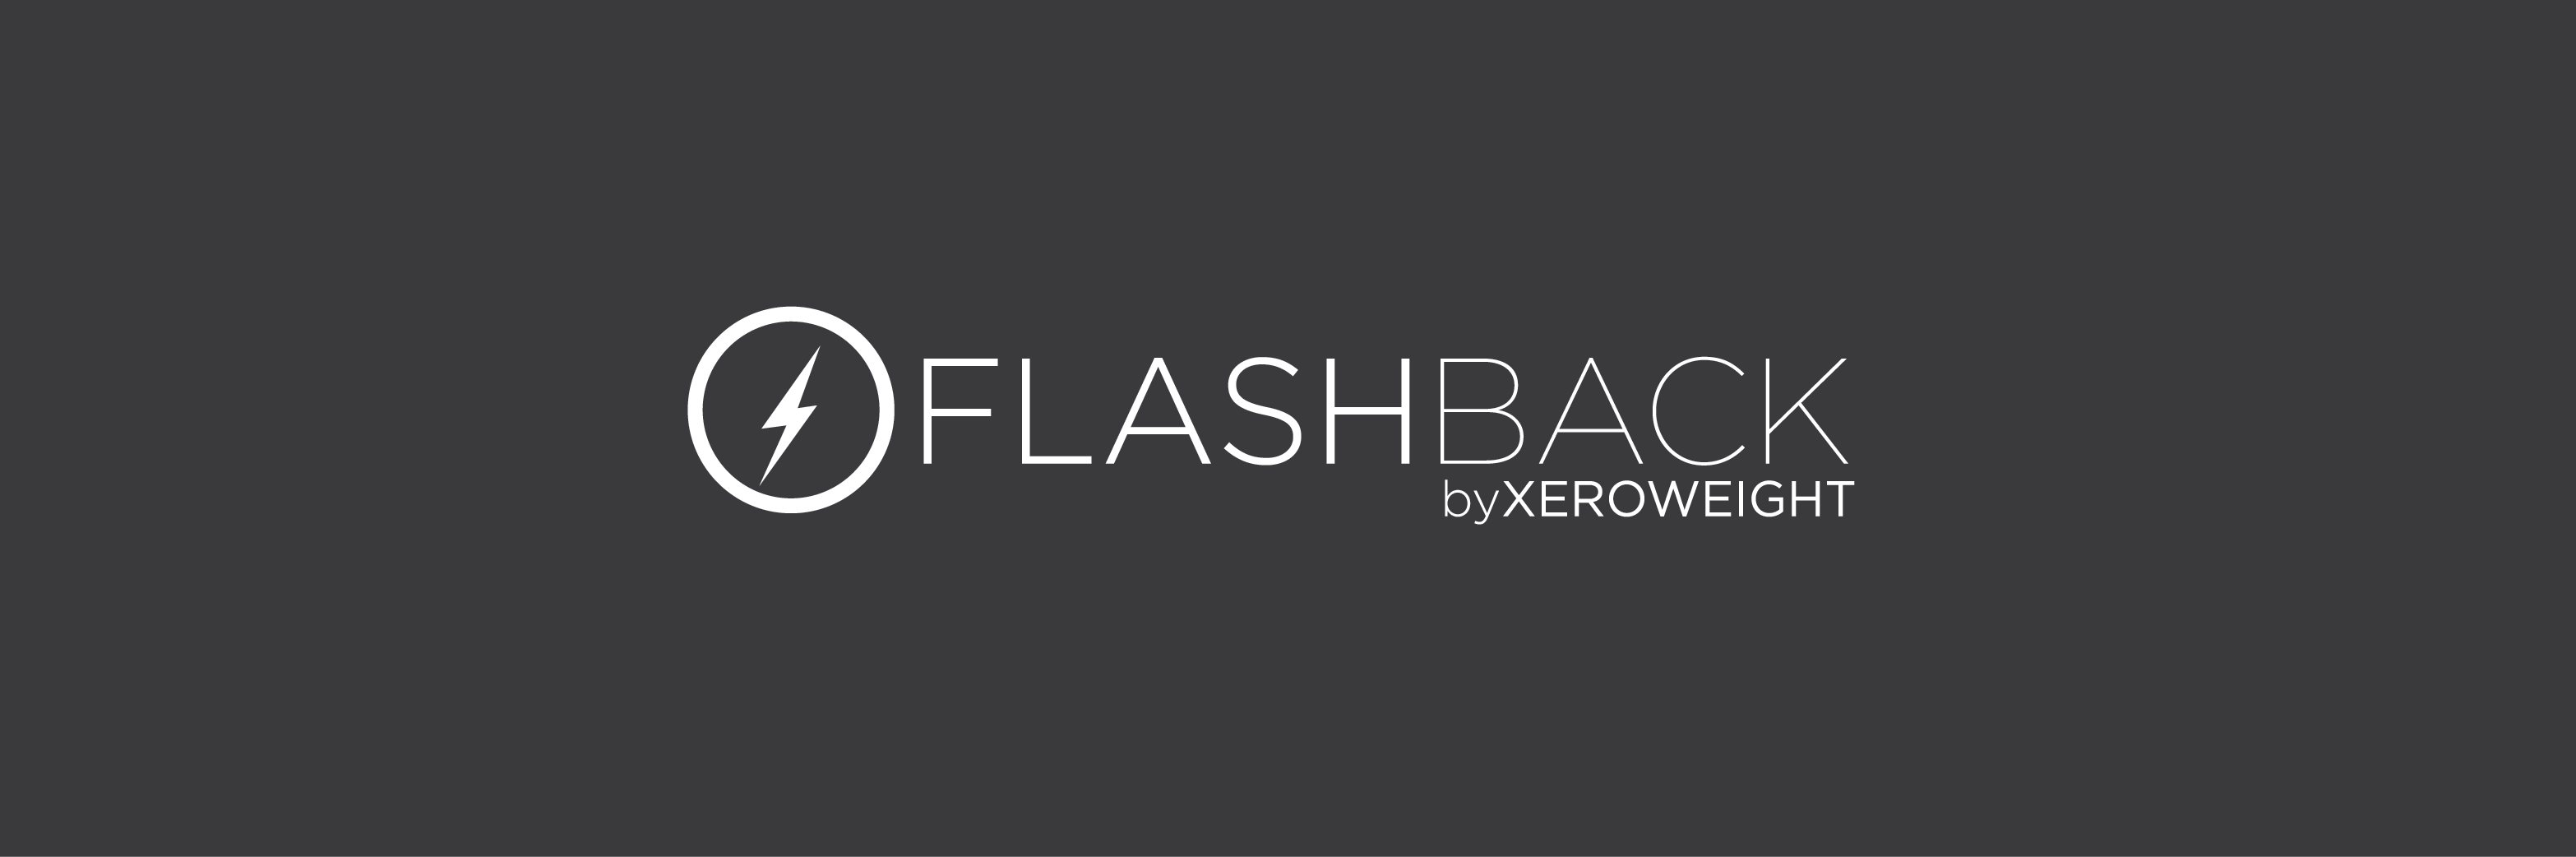 FlashBack Blog #1: System Restore VS FlashBack – FLASHBACK by ...